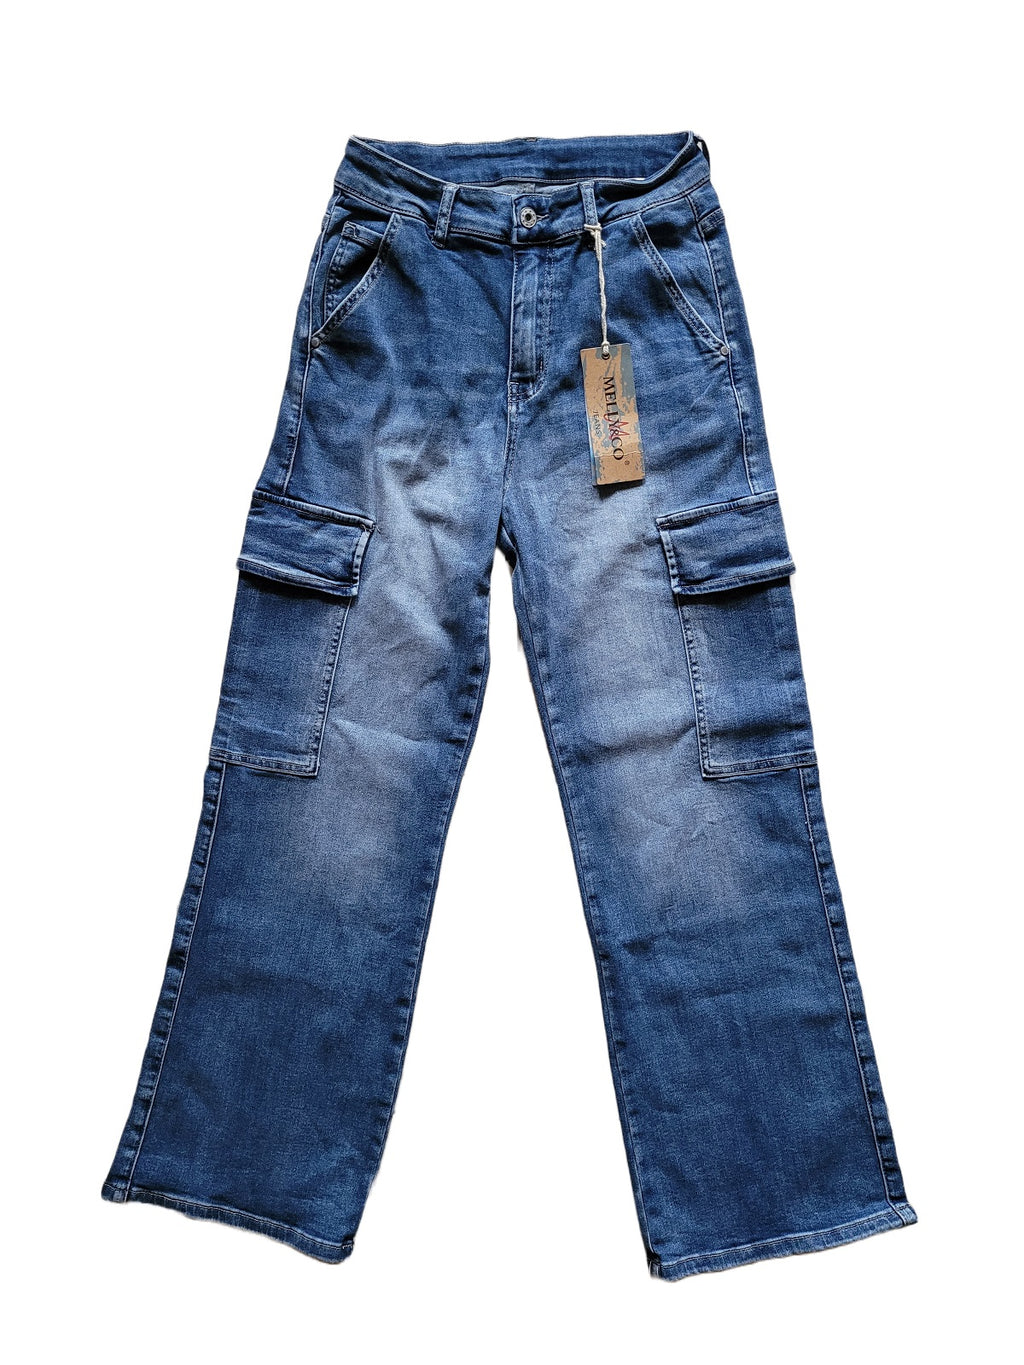 Pantalon en jean de Melly & Co présenté de face comportant une taille haute et deux poches latérales à rabat. L'étiquette Melly and Co est attachée à un passant de ceinture